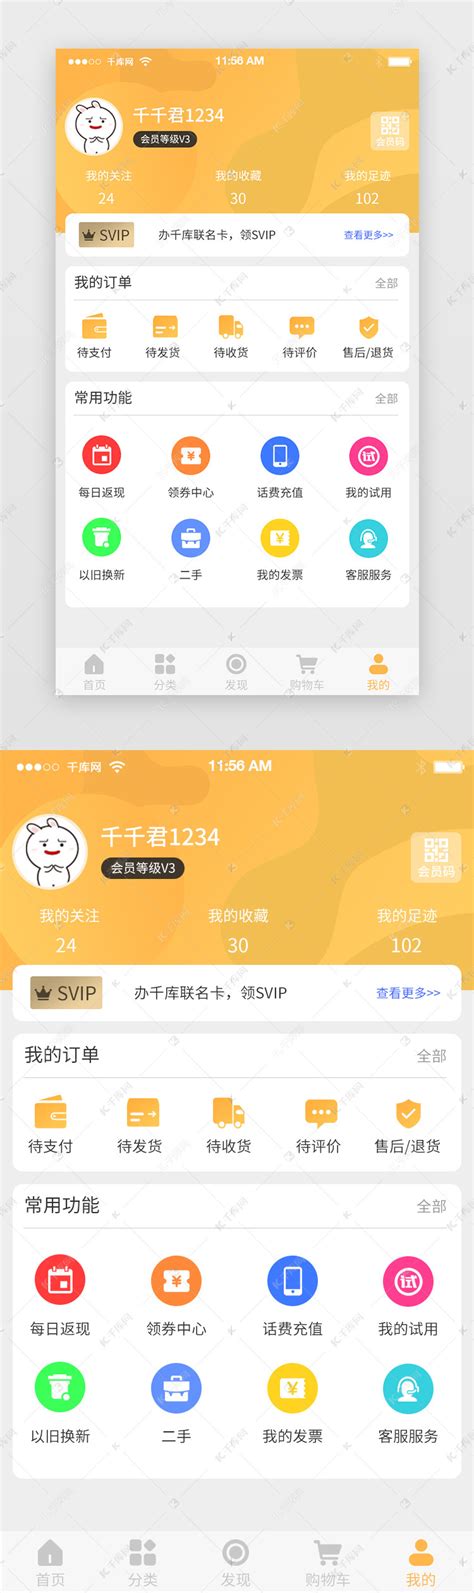 电商团购app购物首页UI页面ui界面设计素材-千库网